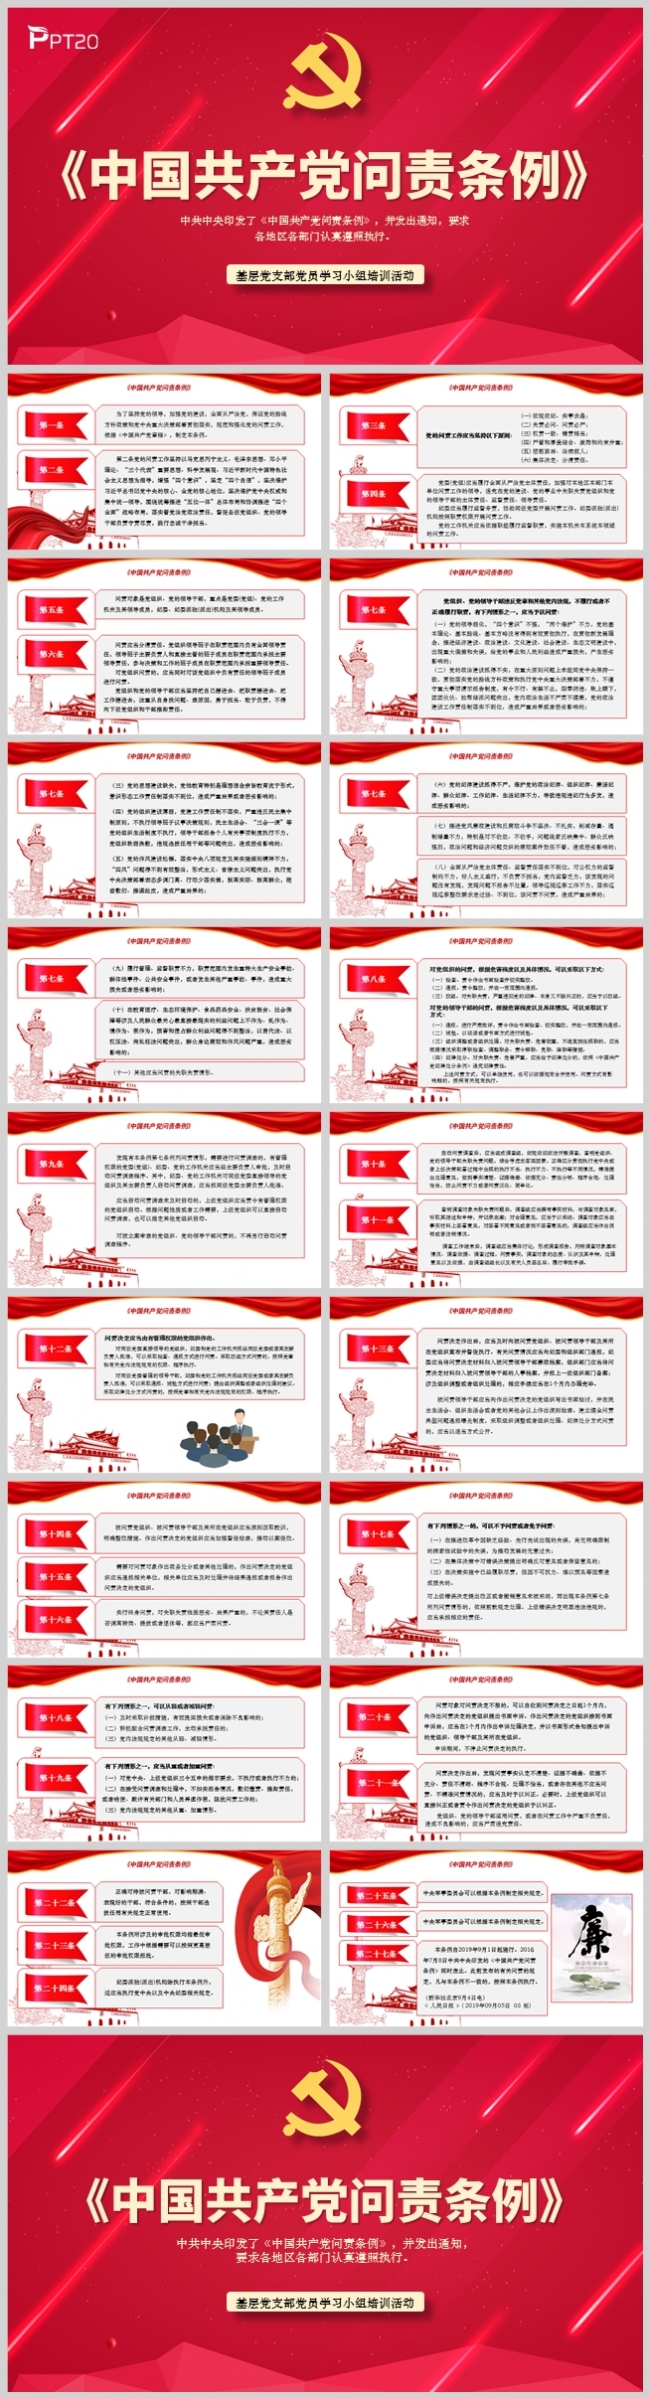 《中国共产党问责条例》党支部学习材料PPT模板